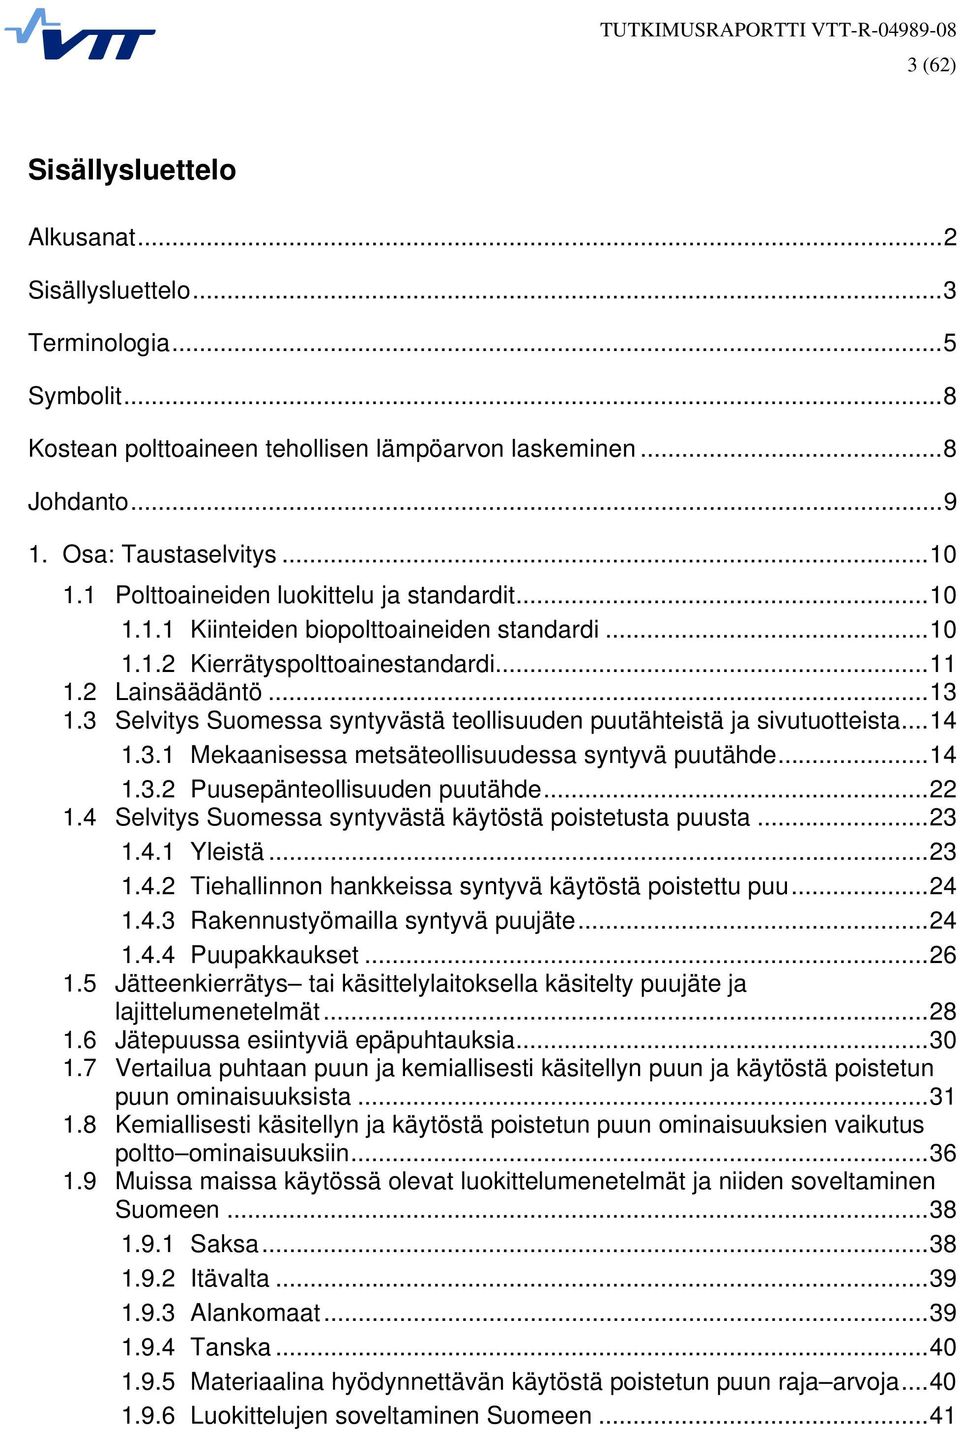 3 Selvitys Suomessa syntyvästä teollisuuden puutähteistä ja sivutuotteista...14 1.3.1 Mekaanisessa metsäteollisuudessa syntyvä puutähde...14 1.3.2 Puusepänteollisuuden puutähde...22 1.